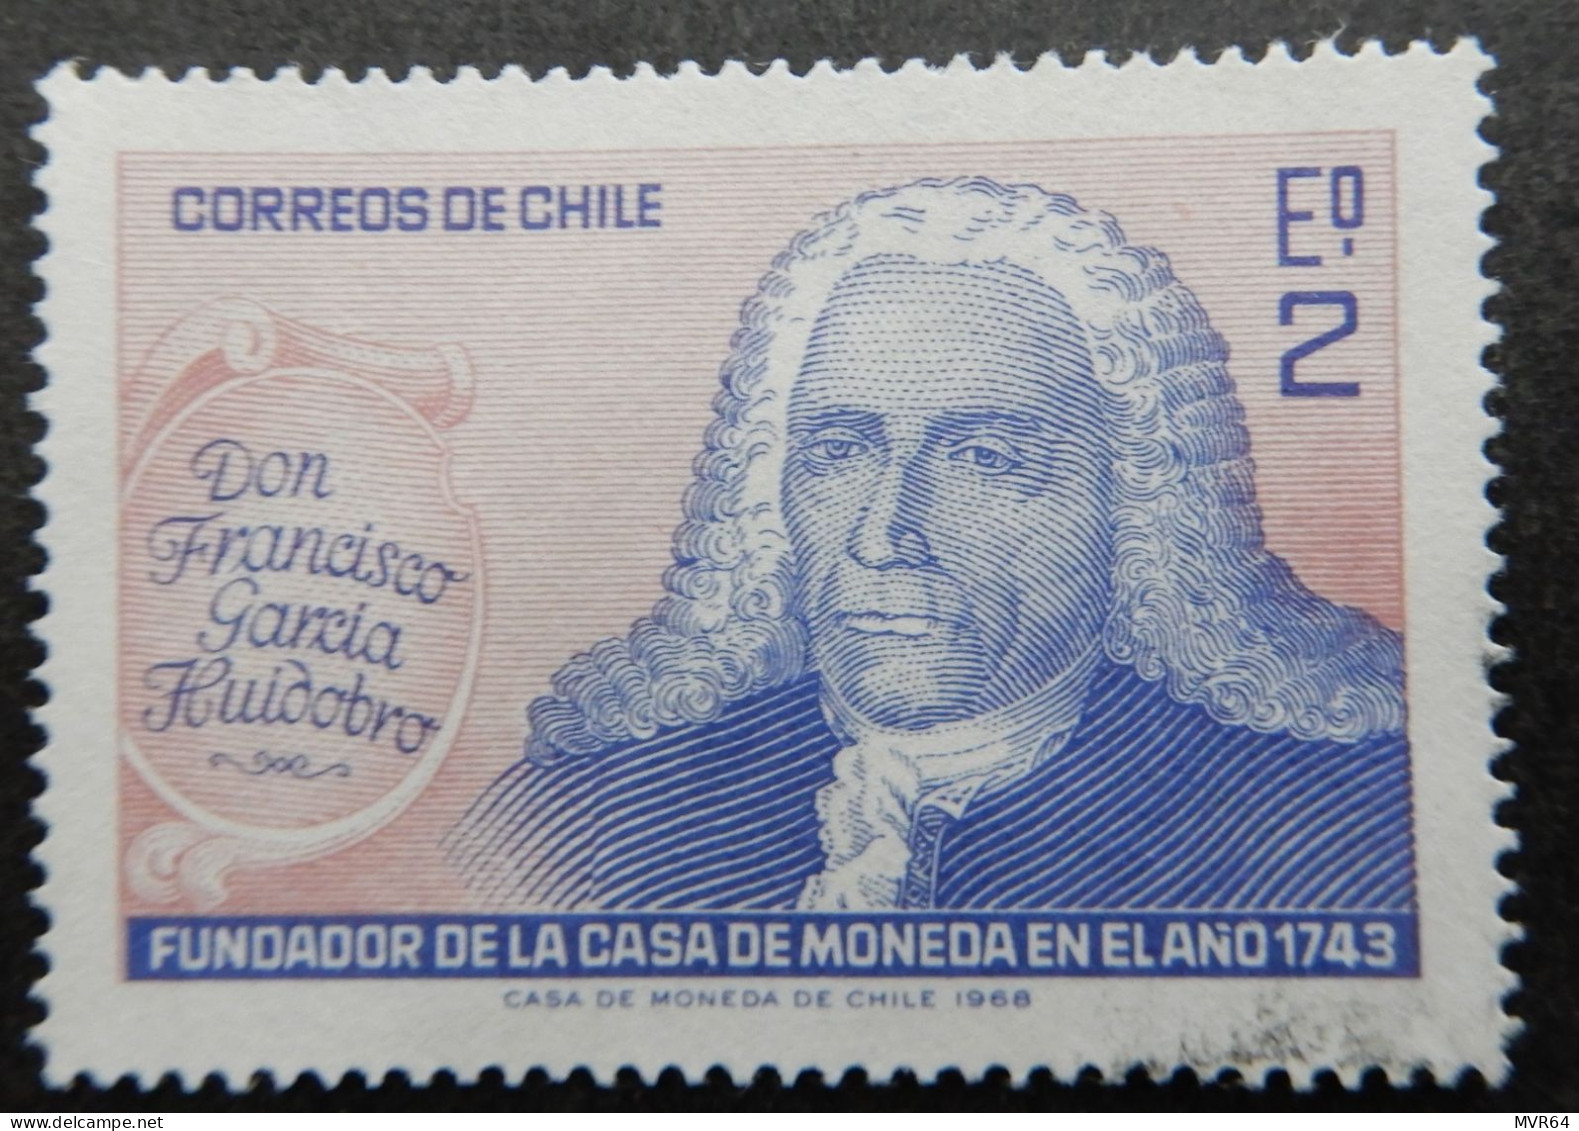 Chili Chile 1968 (1) Don Francisco Garcia Huidobra Anniv. Casa De Moneda. - Cile